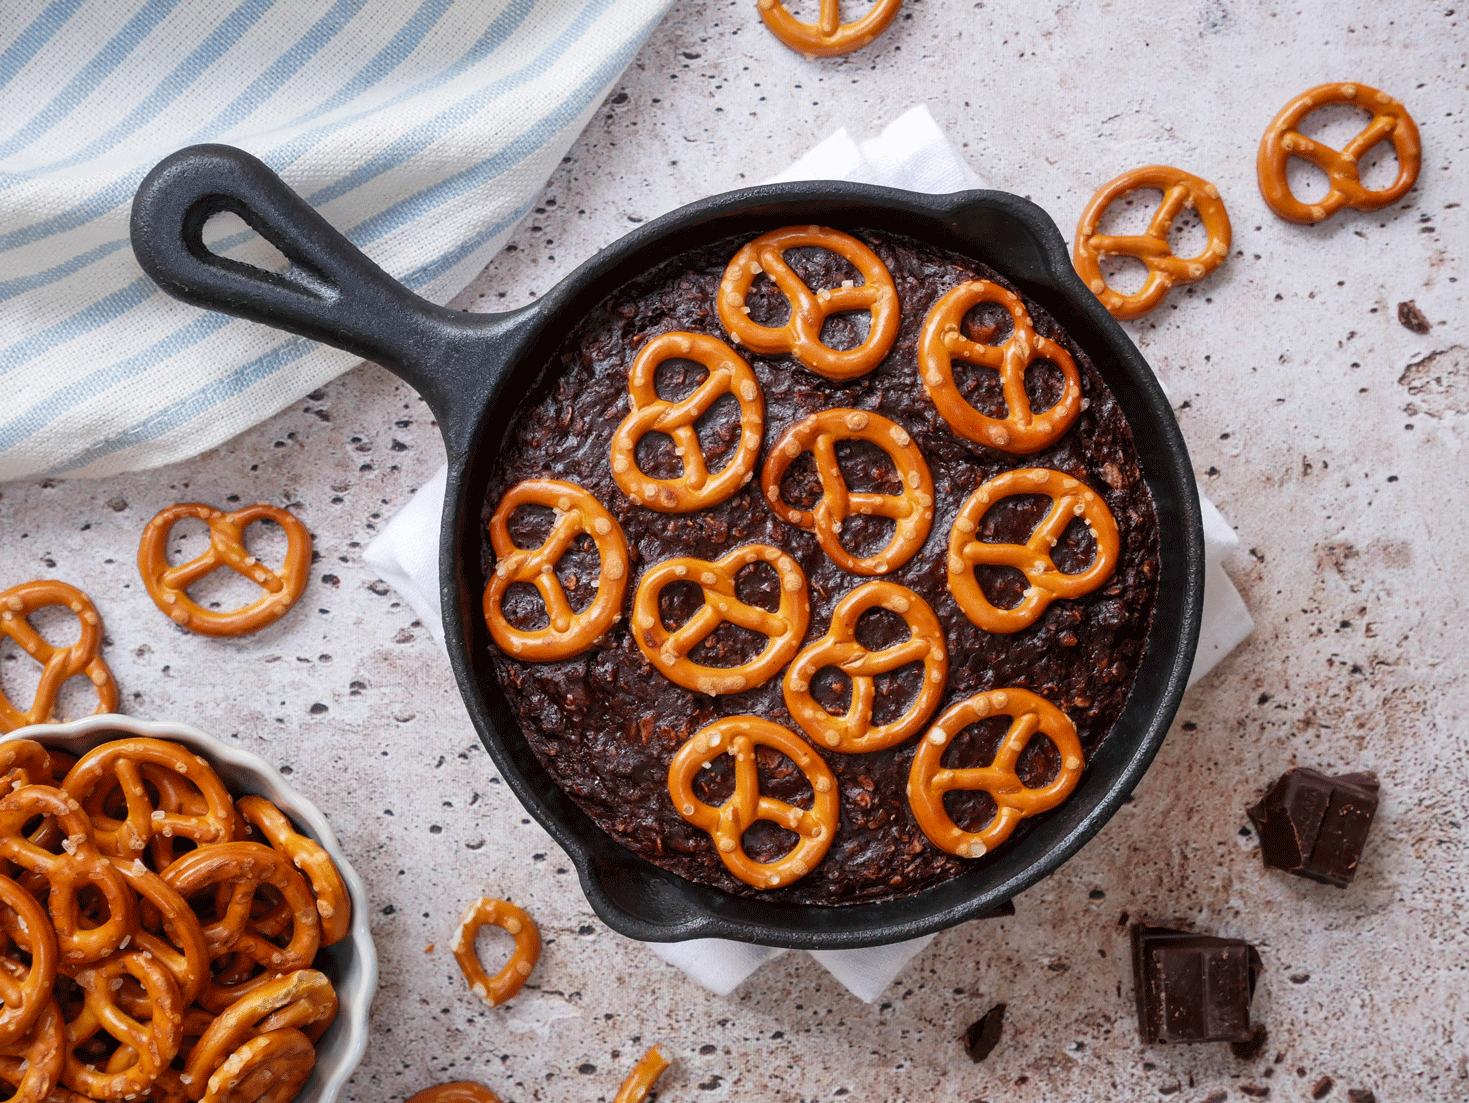 Choco baked oats met pretzels